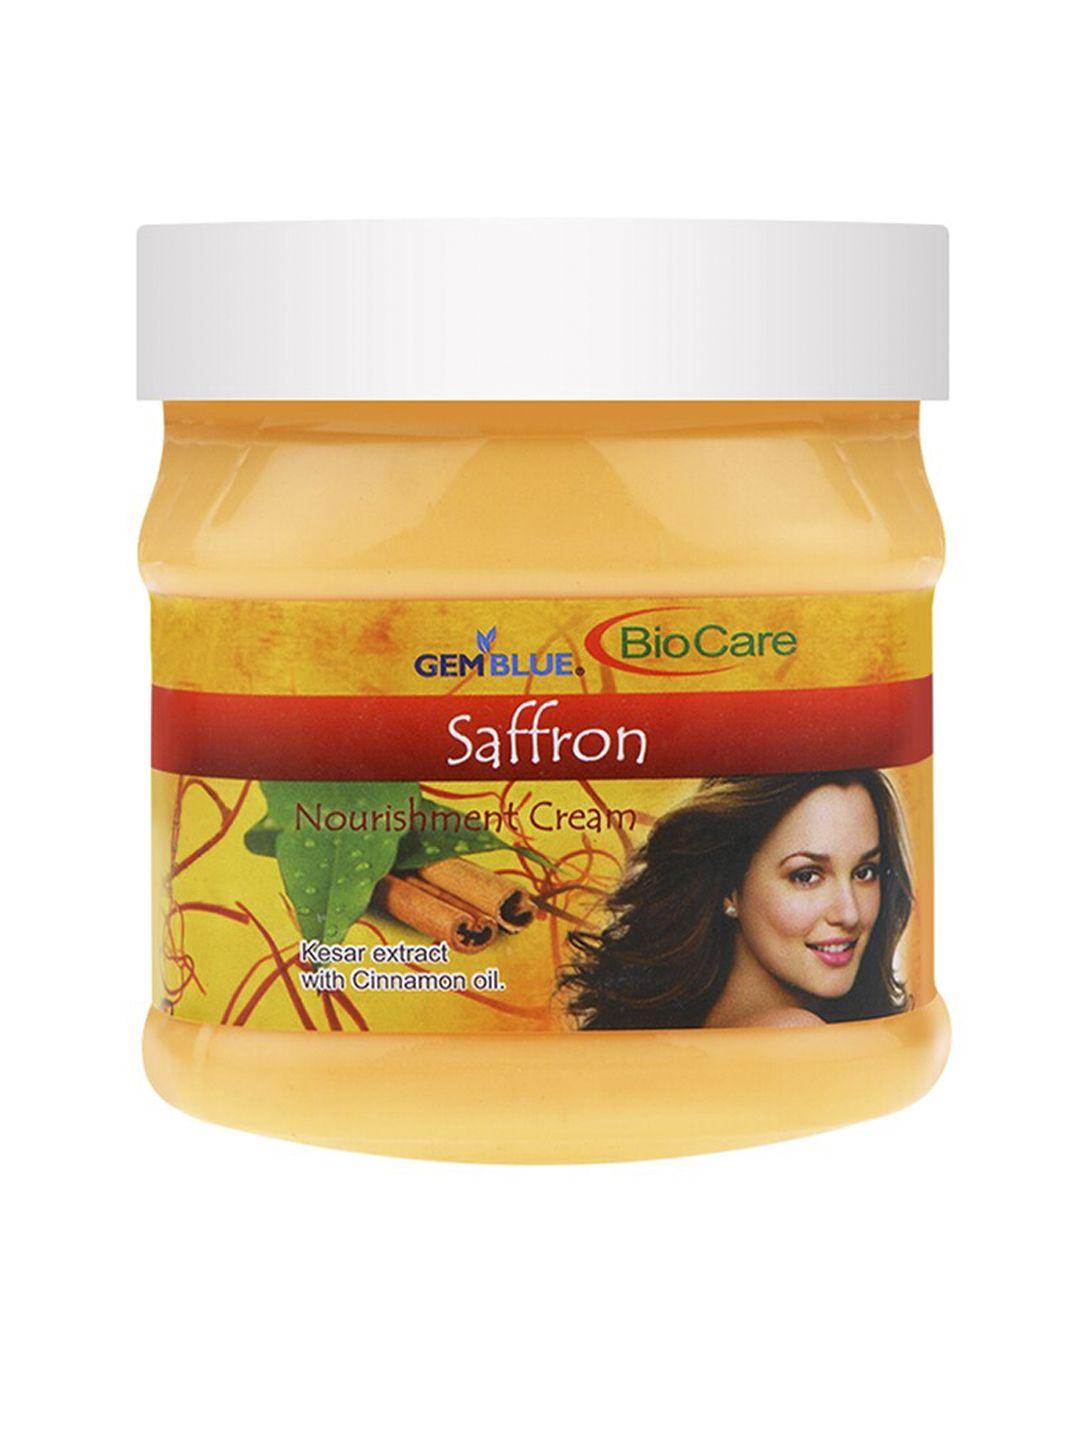 gemblue biocare saffron nourishment face & body cream 500ml